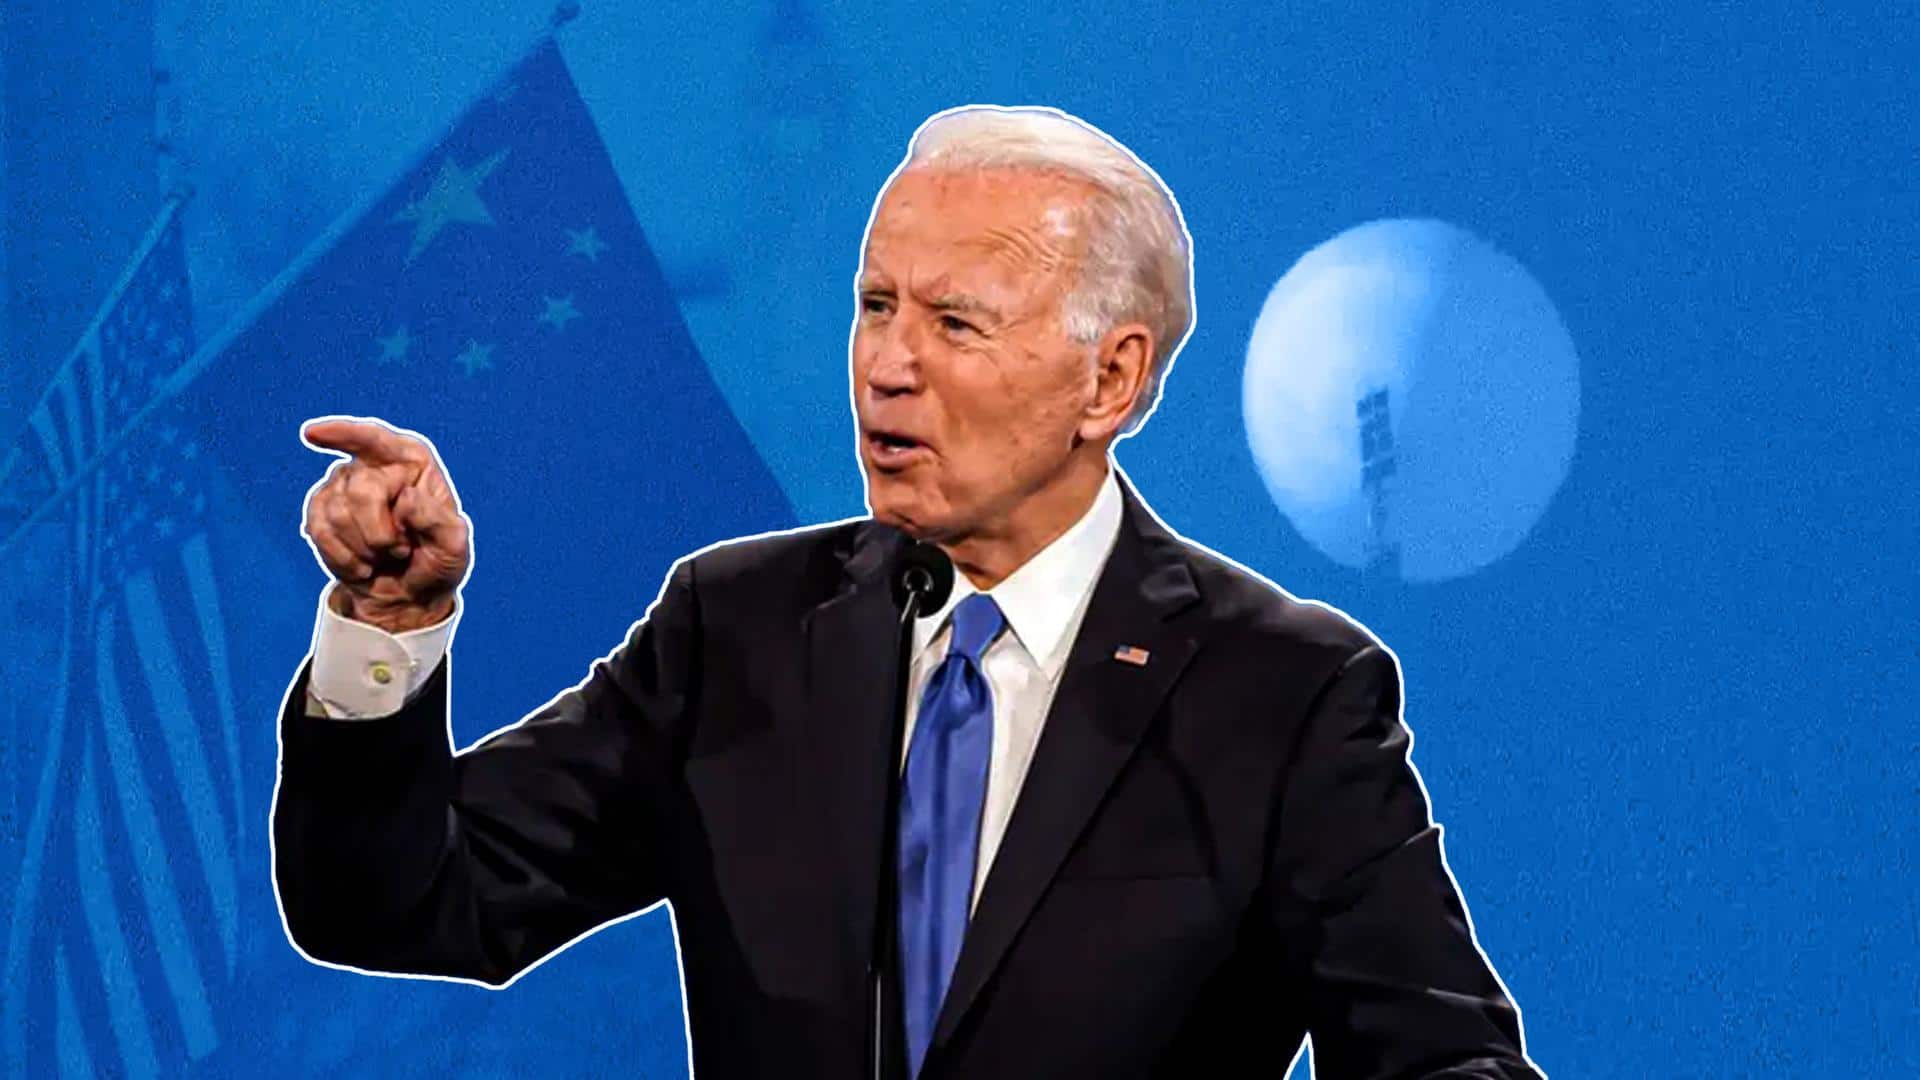 No apologies for taking down spy balloon: Joe Biden